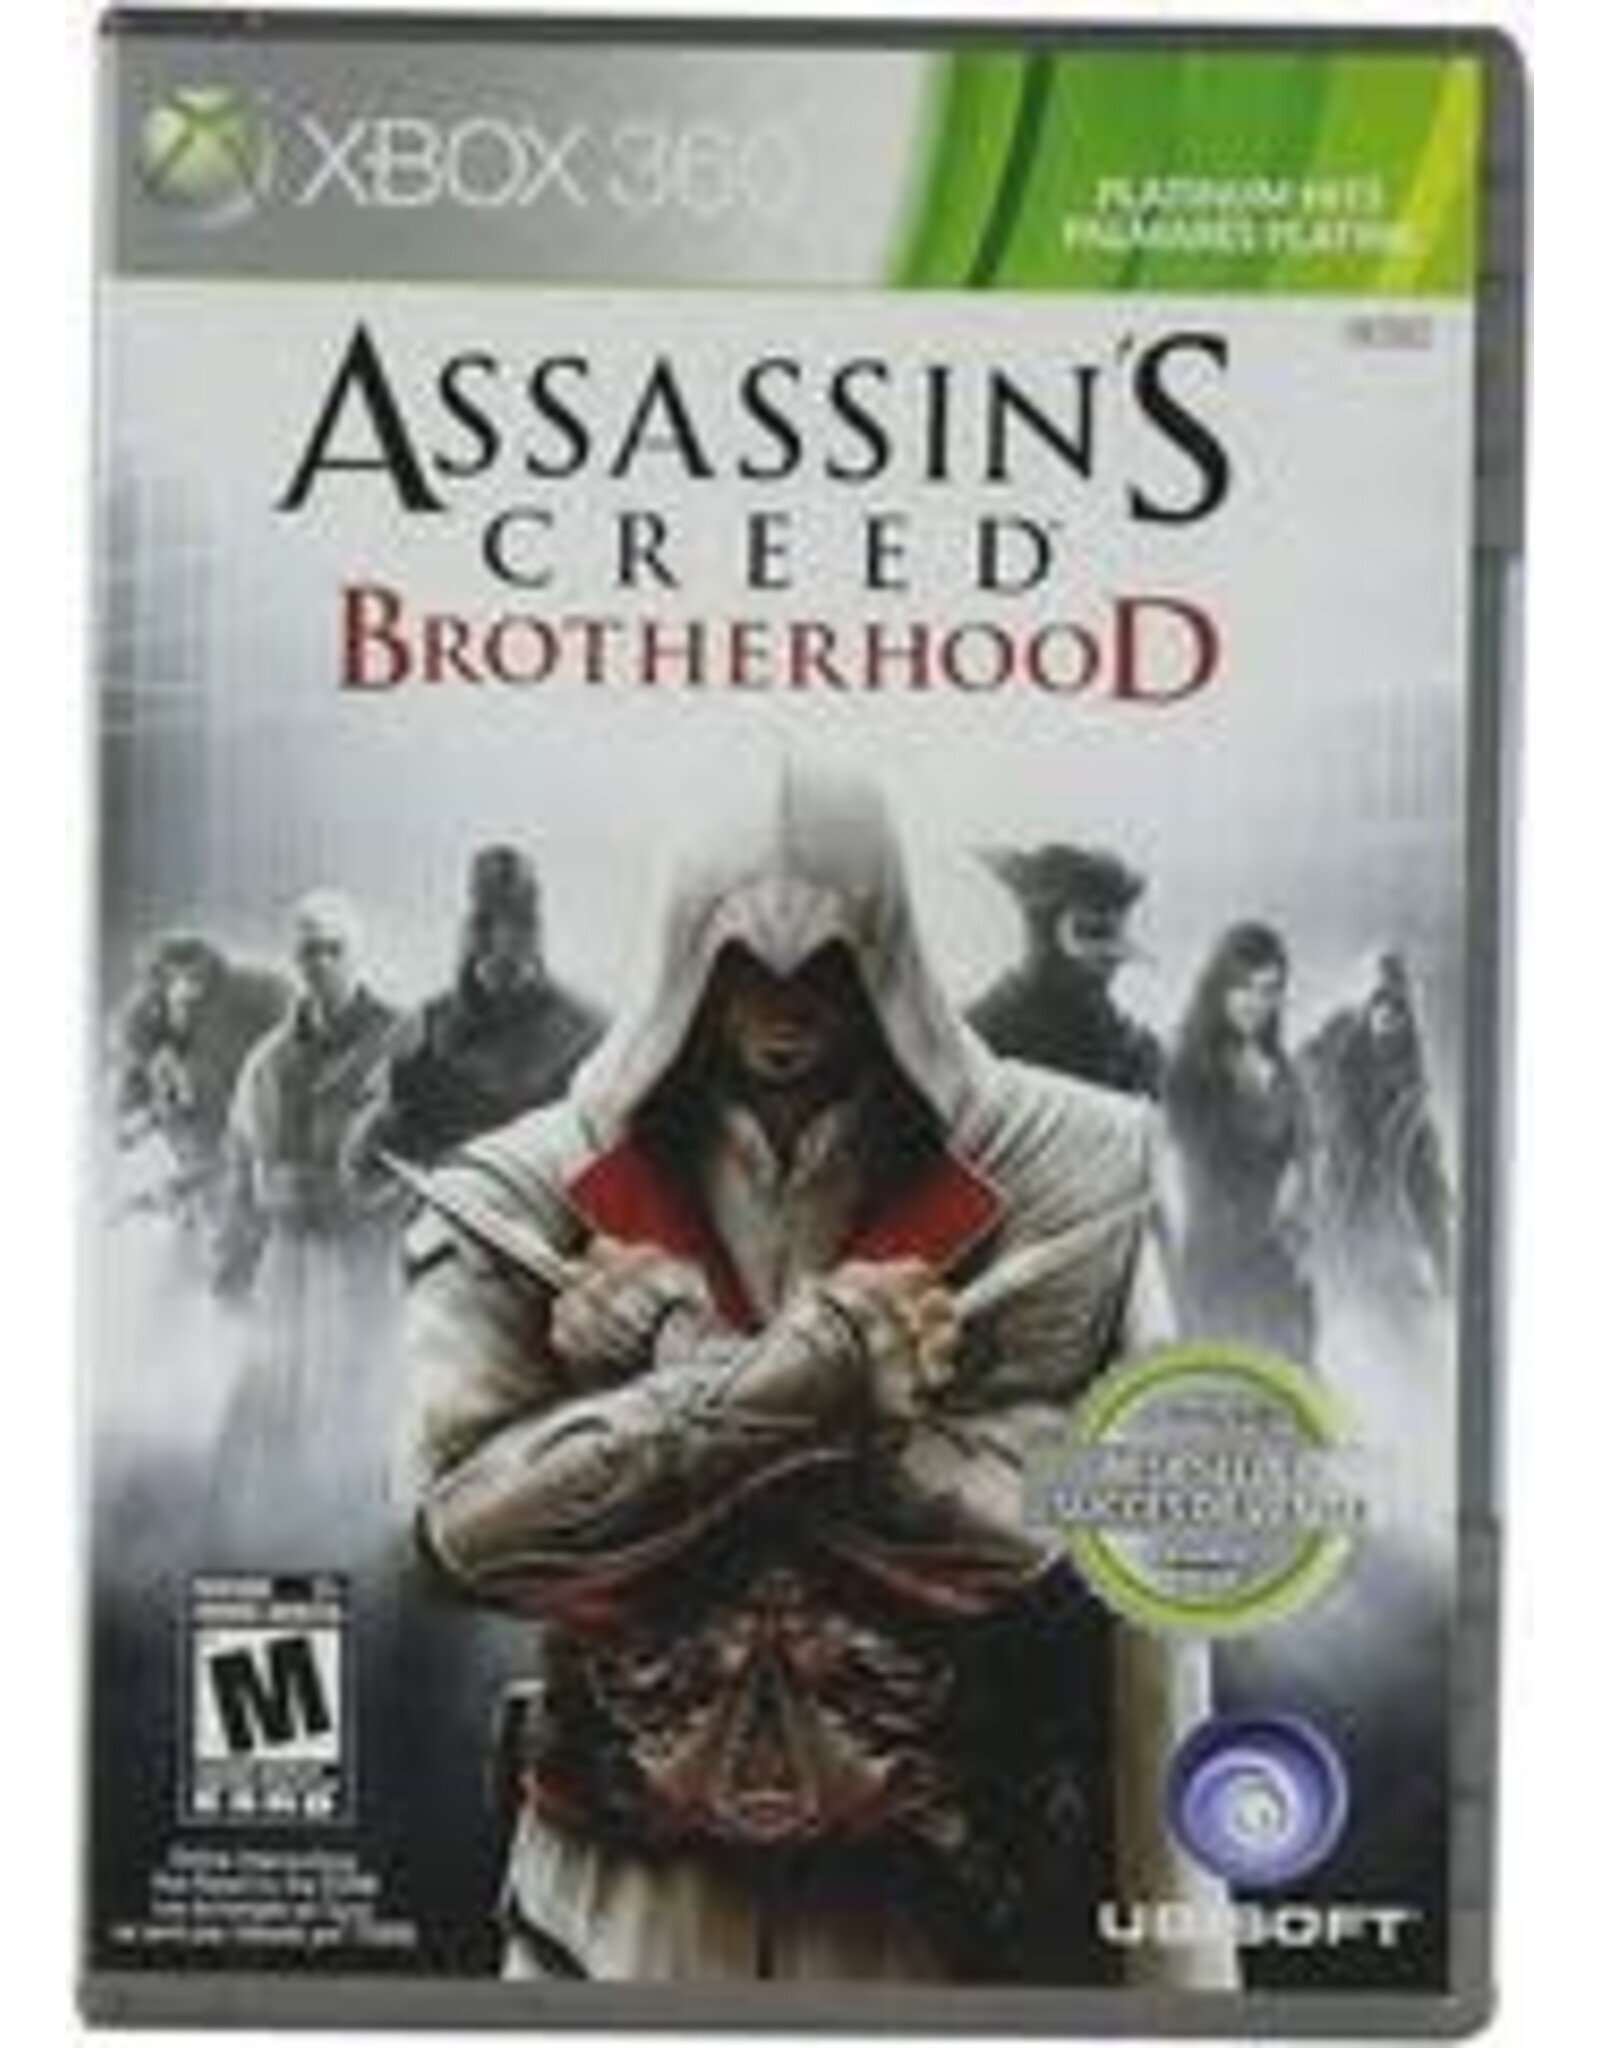 Xbox 360 Assassin's Creed: Brotherhood Platinum Hits (No Manual)